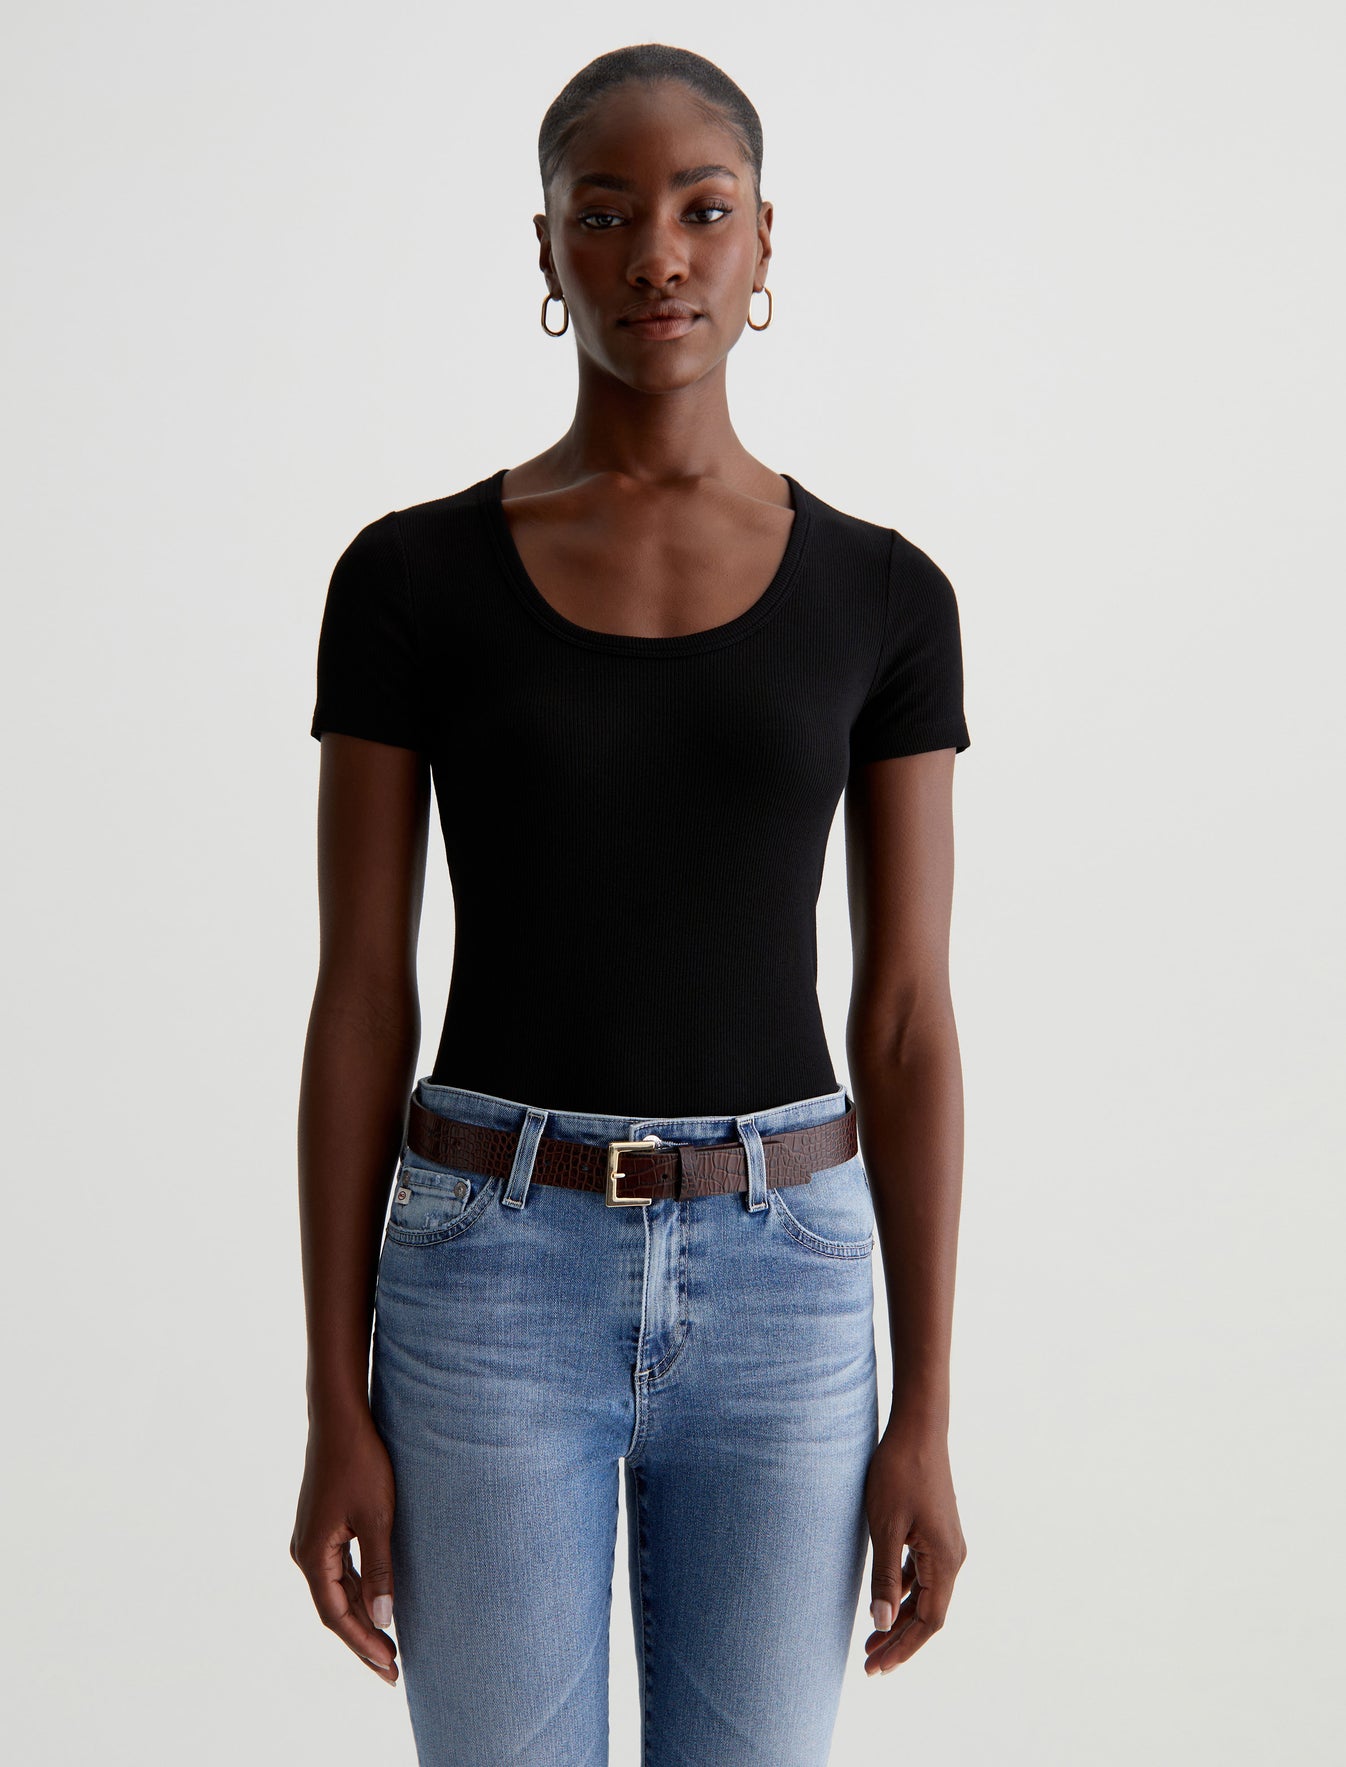 Jessie Top True Black Slim Fit S/S Scoop Neck T-Shir Women Top Photo 1